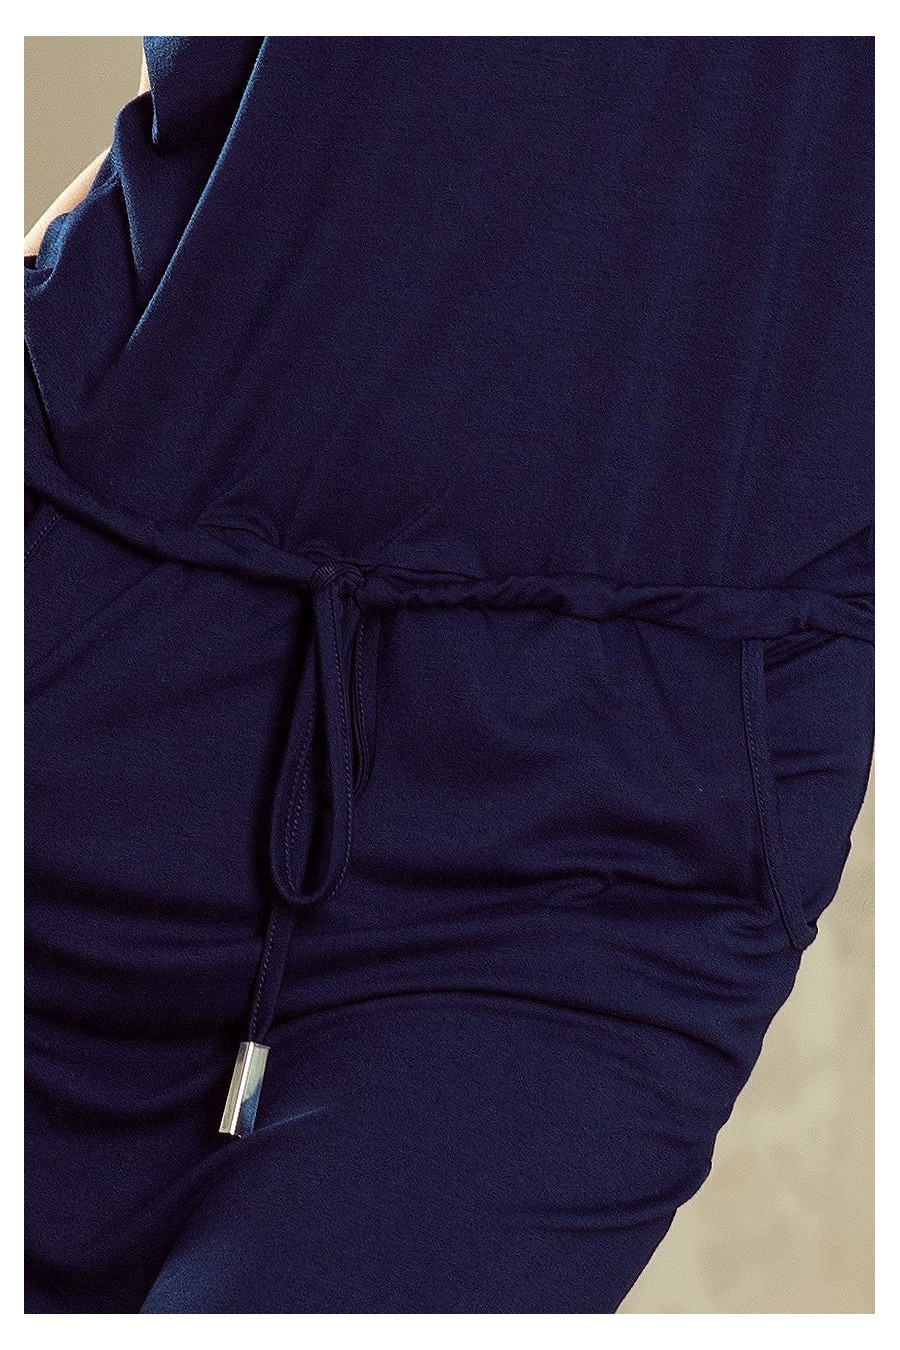 196-1 Sportovní šaty s krátkým rukávem a kapsou - tmavě modré